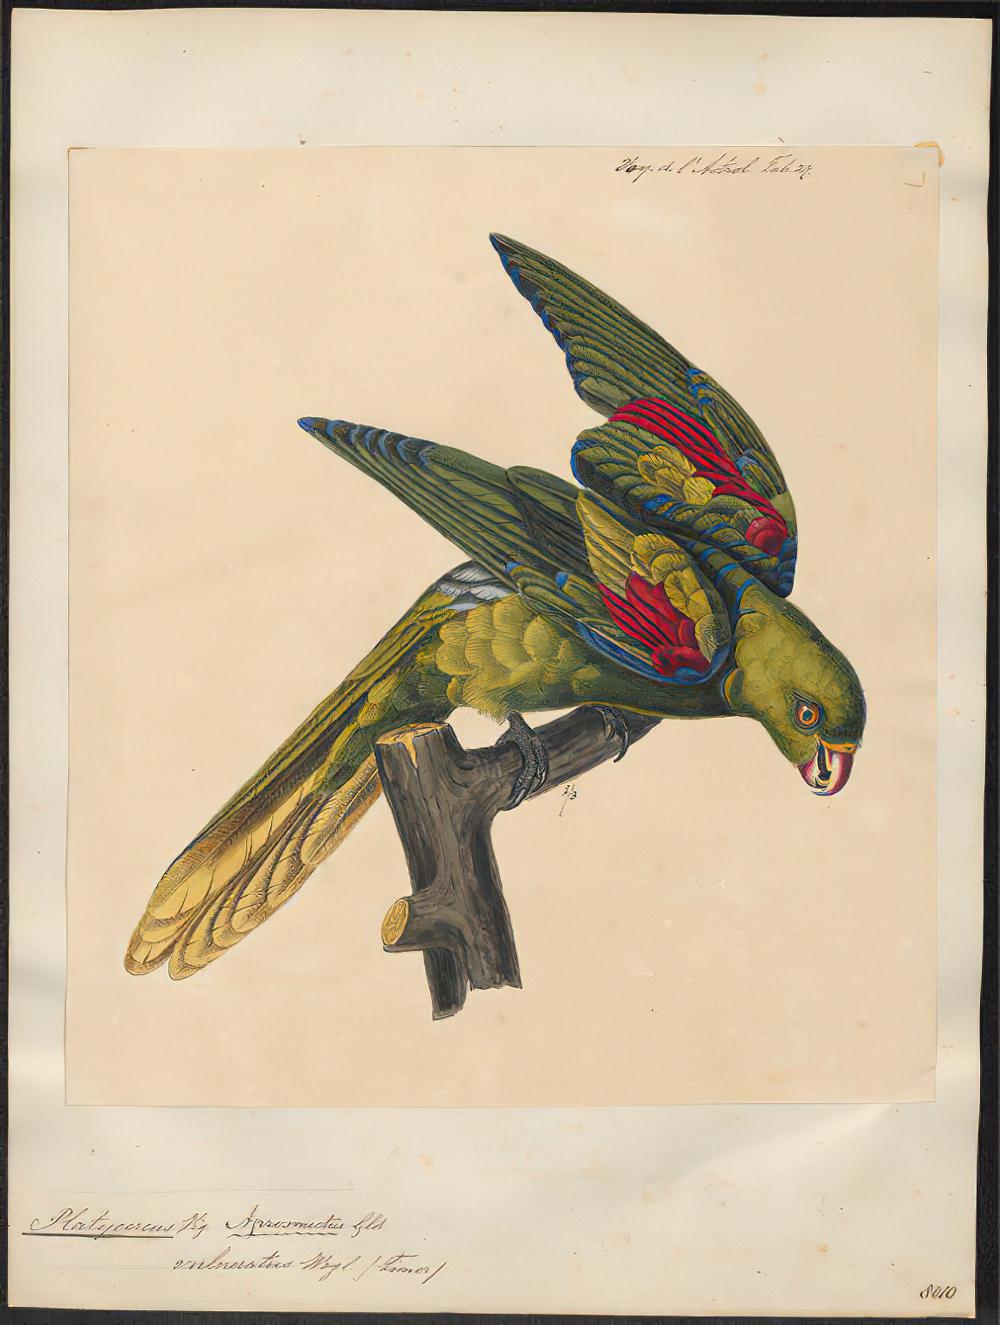 帝汶红翅鹦鹉 / Jonquil Parrot / Aprosmictus jonquillaceus